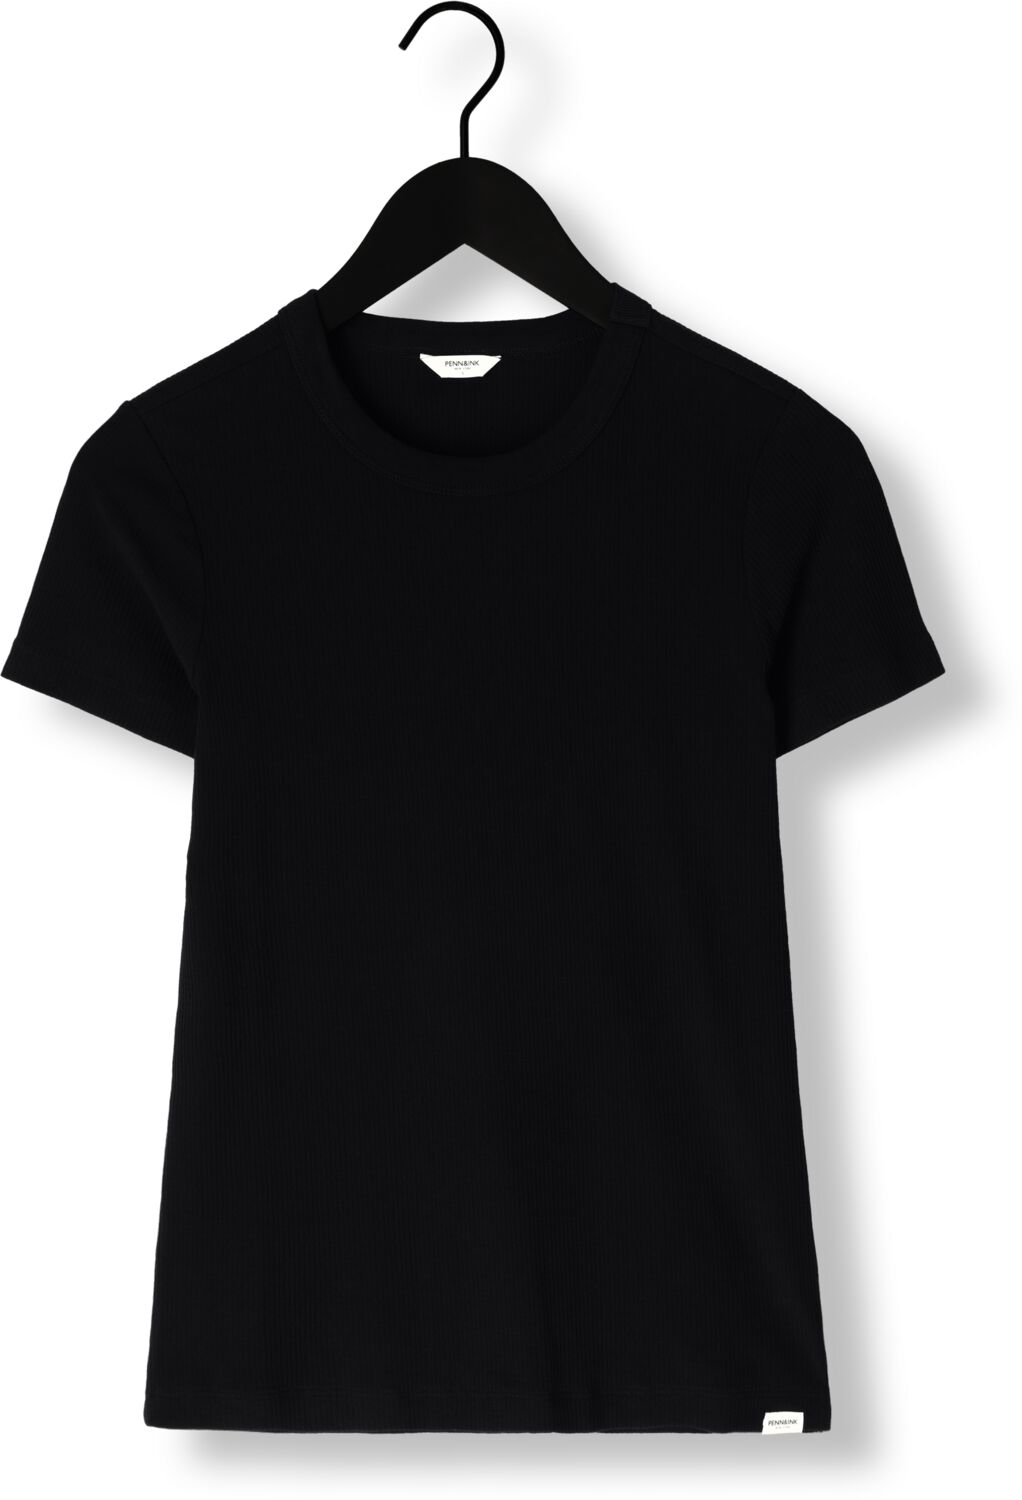 PENN & INK Dames Tops & T-shirts T-shirt Zwart